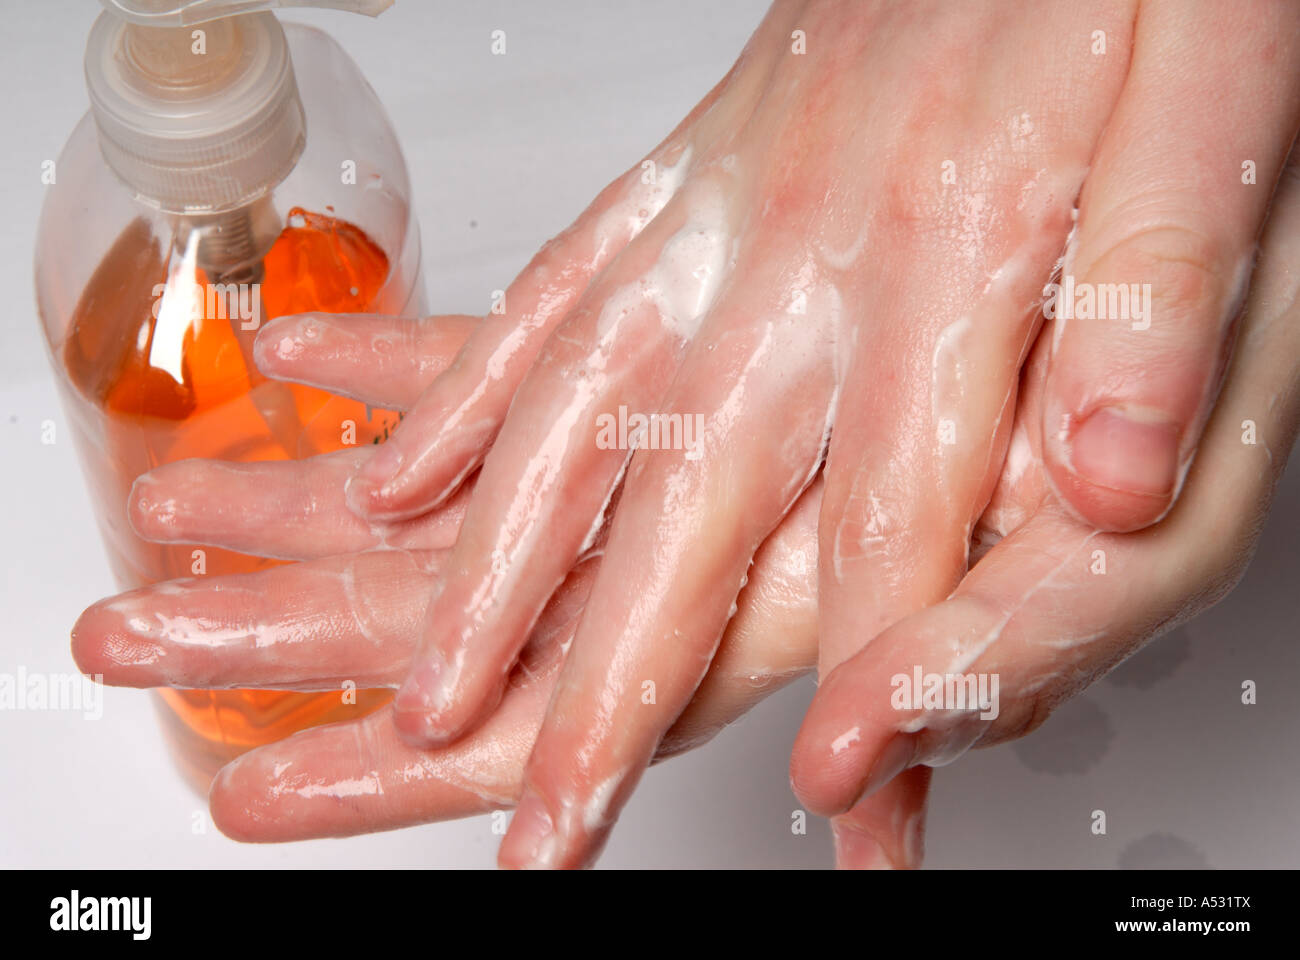 Lavarsi le mani. Foto Stock